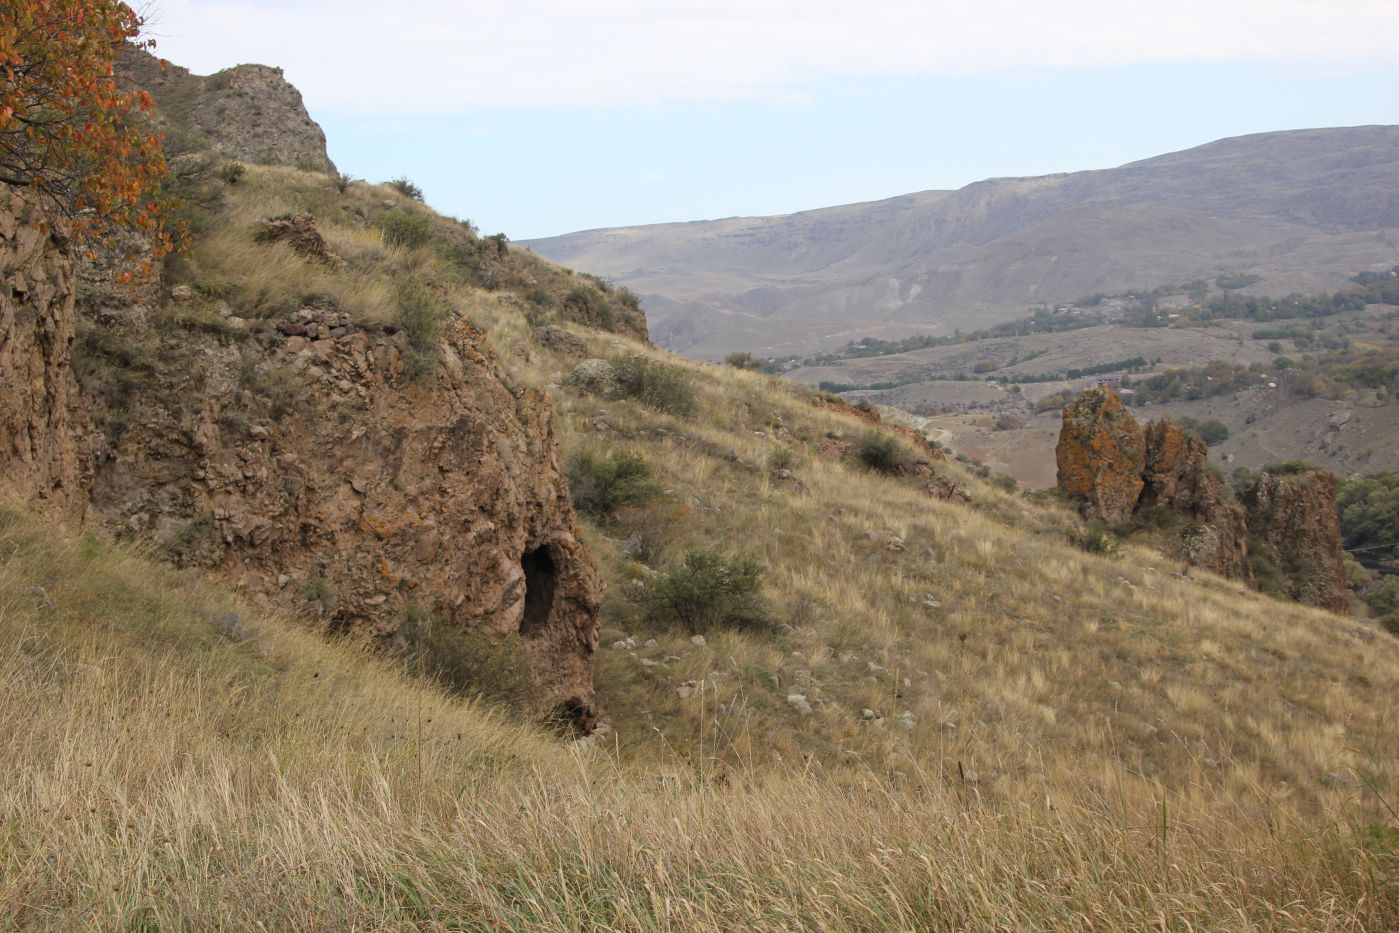 Окрестности крепости Тмогви, изображение ландшафта.